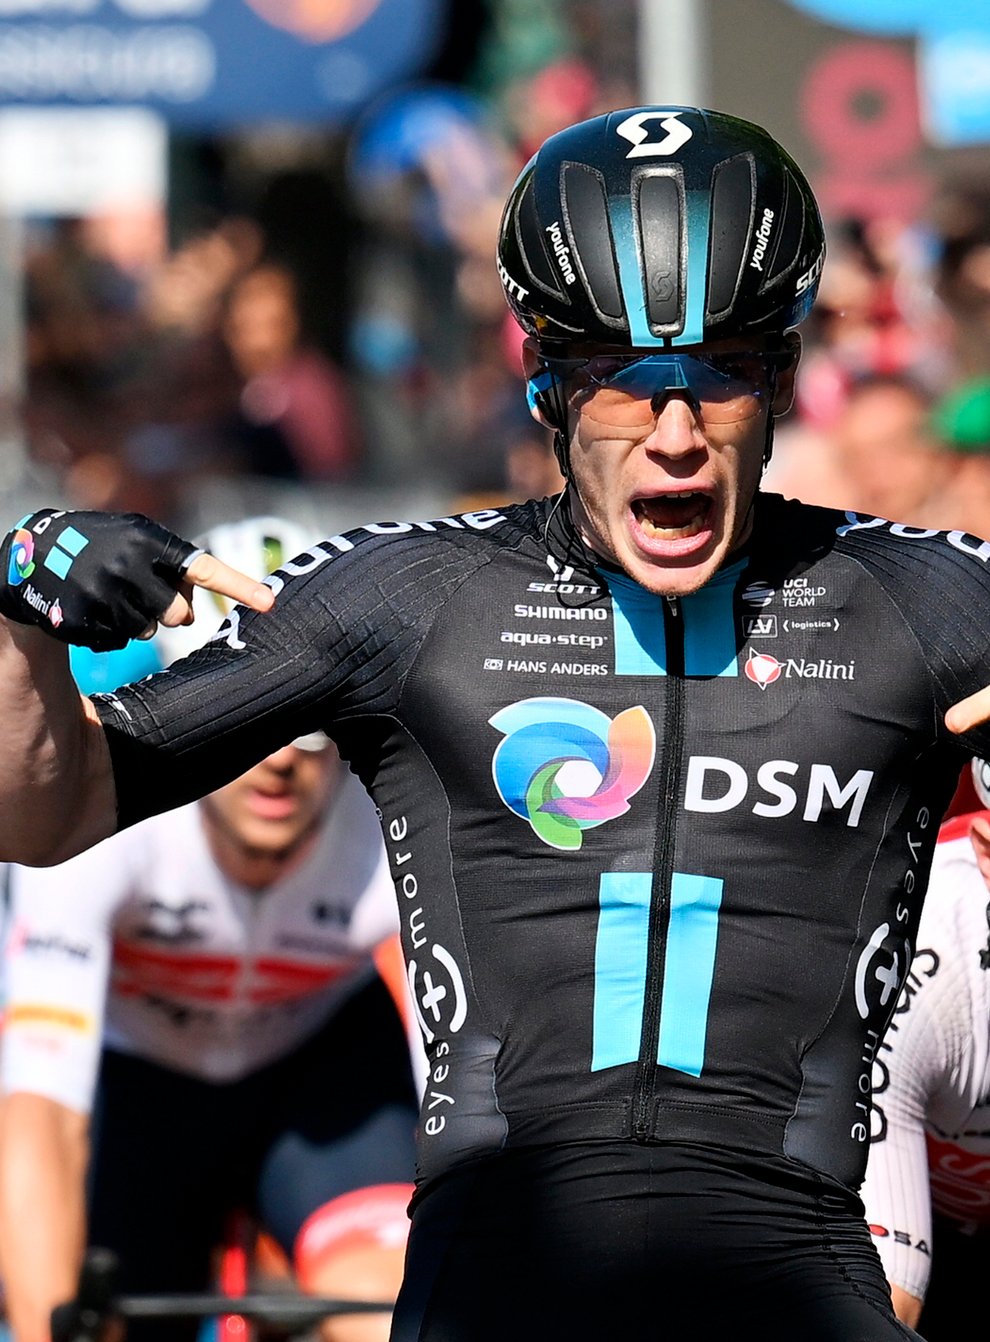 Italy’s Alberto Dainese won stage 11 of the Giro d’Italia (Gian Mattia D’Alberto/AP)